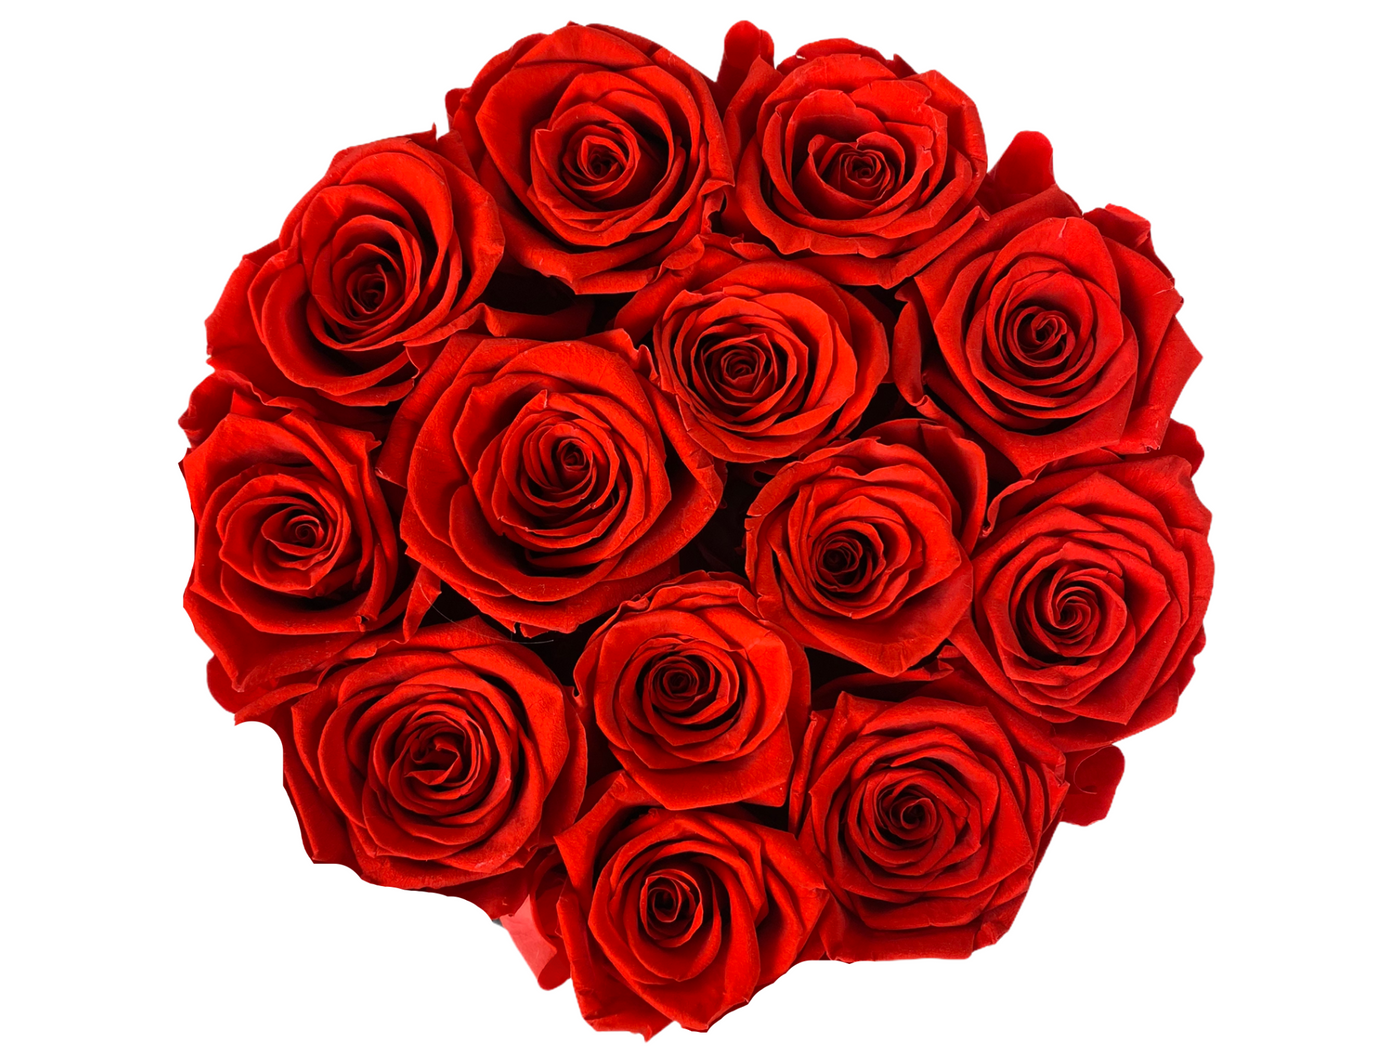 Collection bouquets roses éternelles 100% naturelle